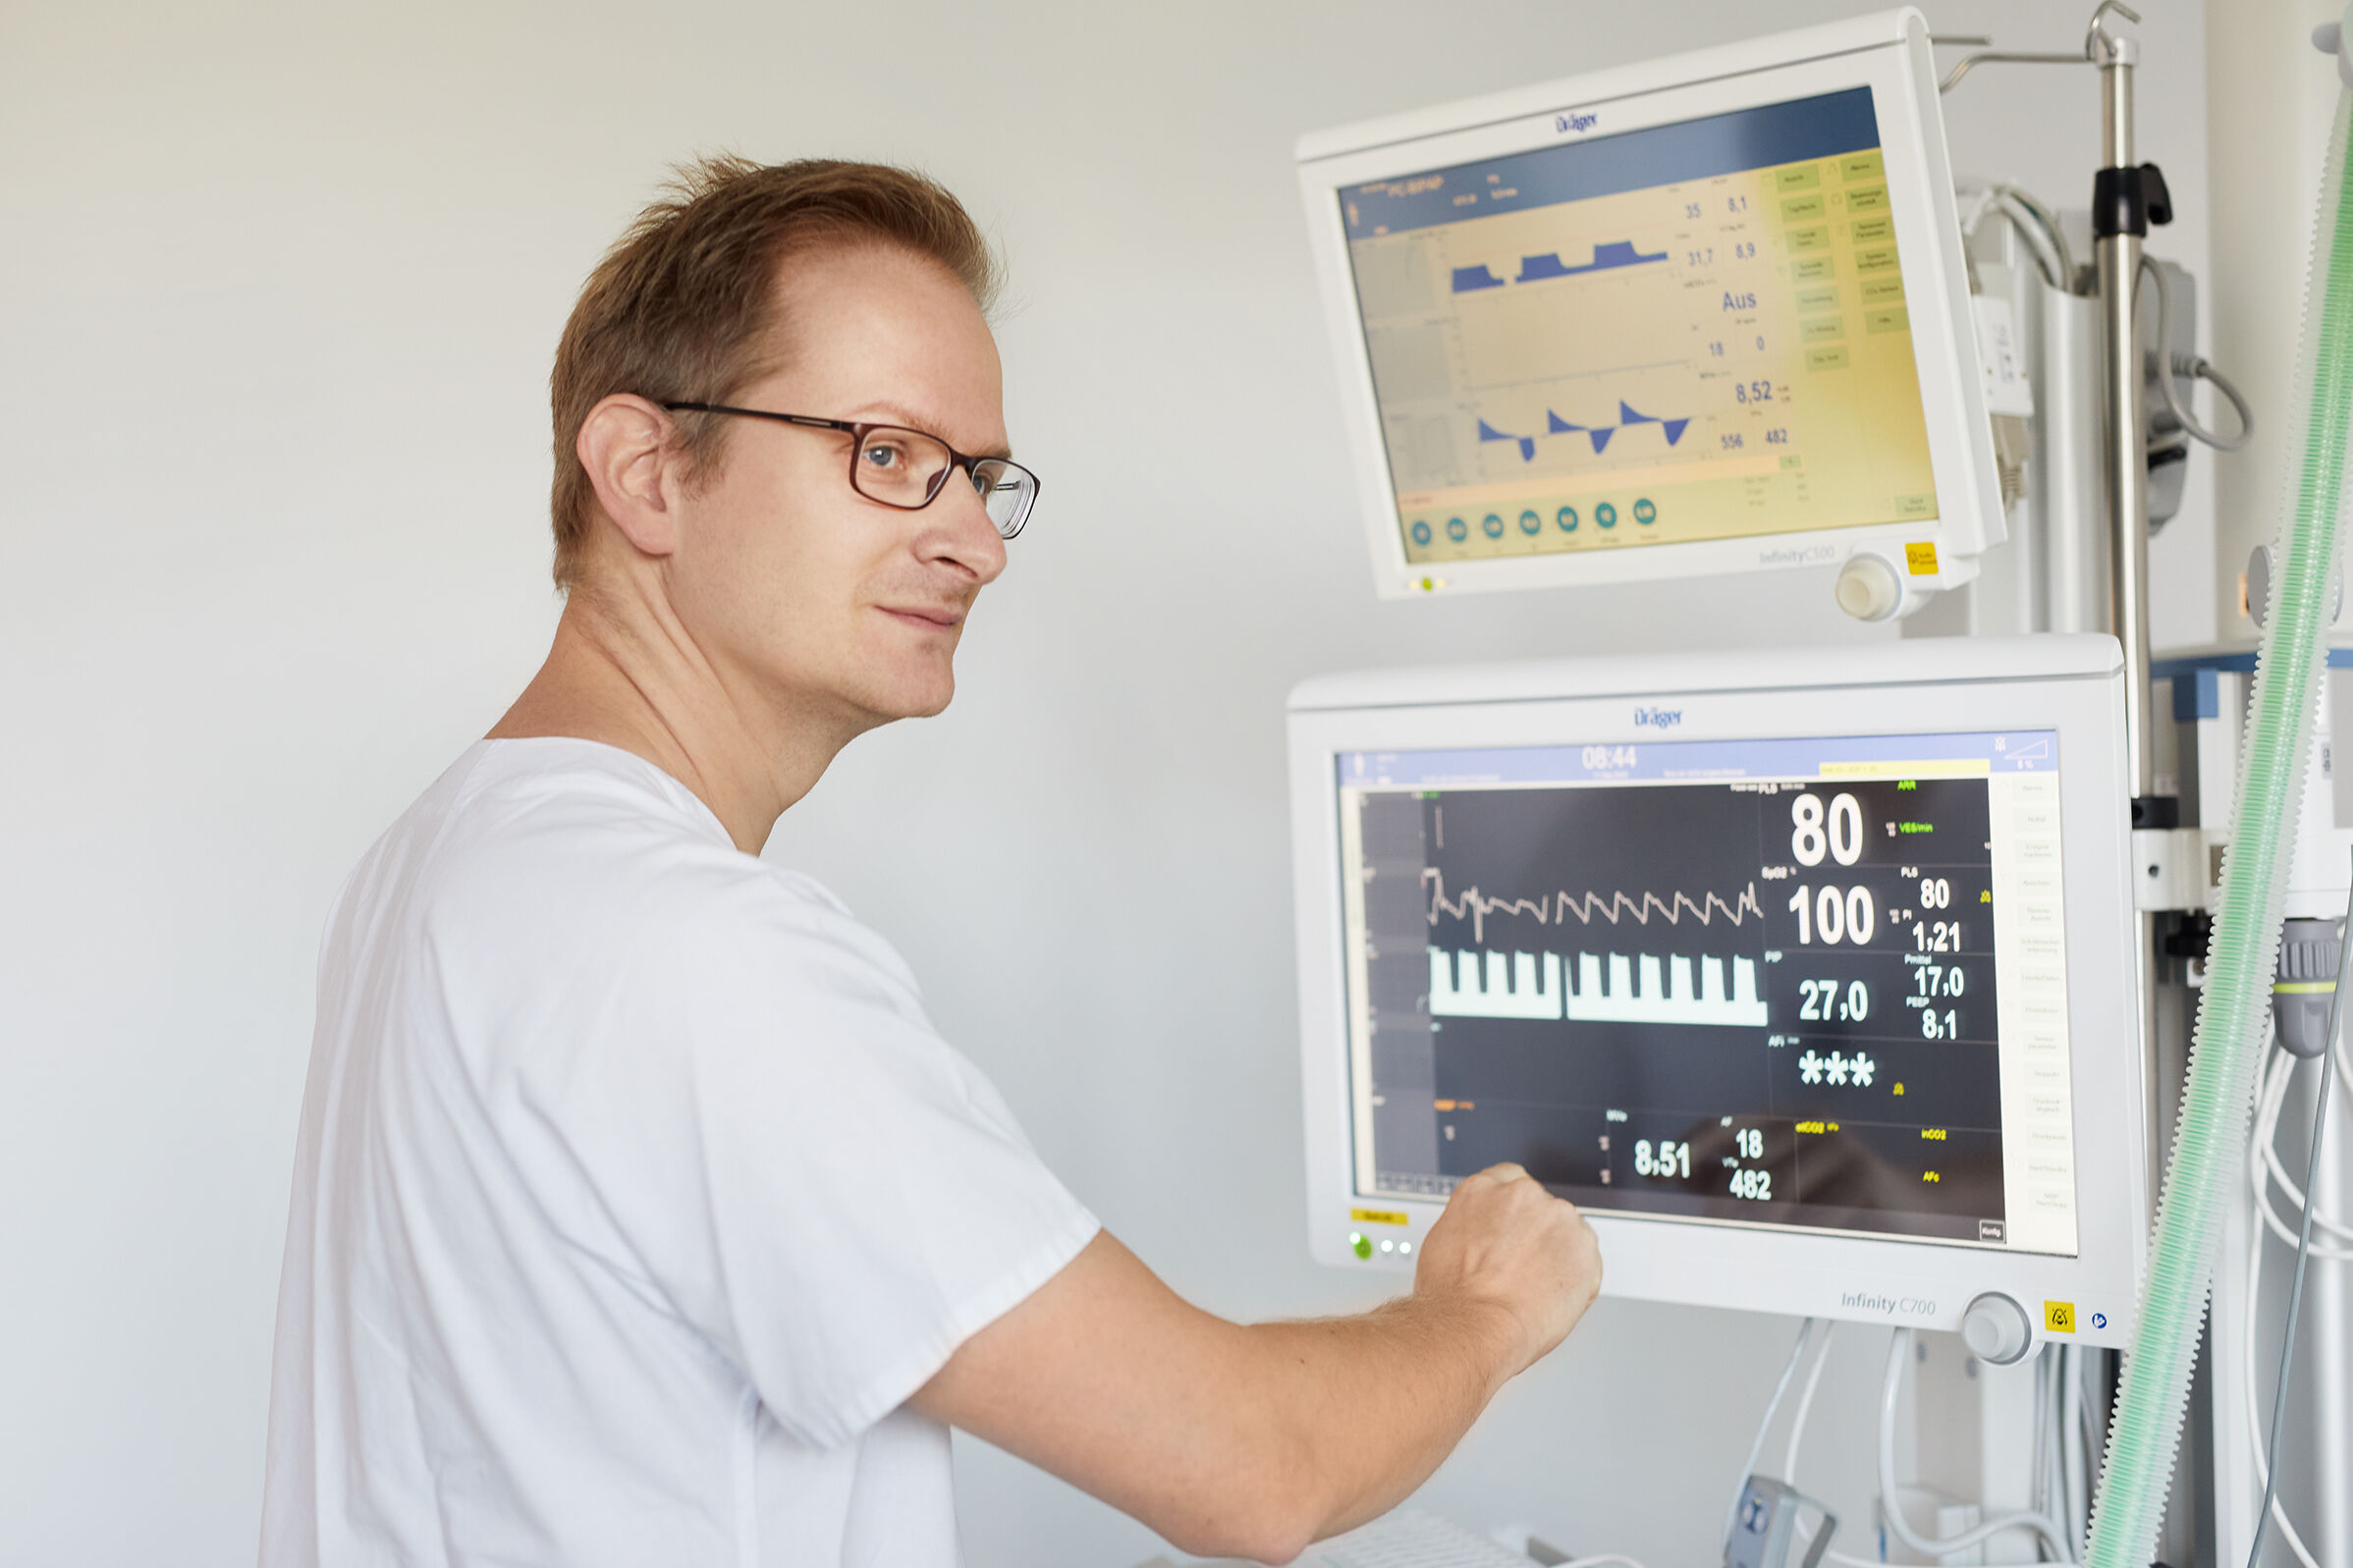 Herzfrequenz und Sauerstoffsättigung stimmen, zumindest auf den Überwachungsmonitoren. Wolfram Lamm vergewissert sich immer mit dem Blick zur Patientin.  